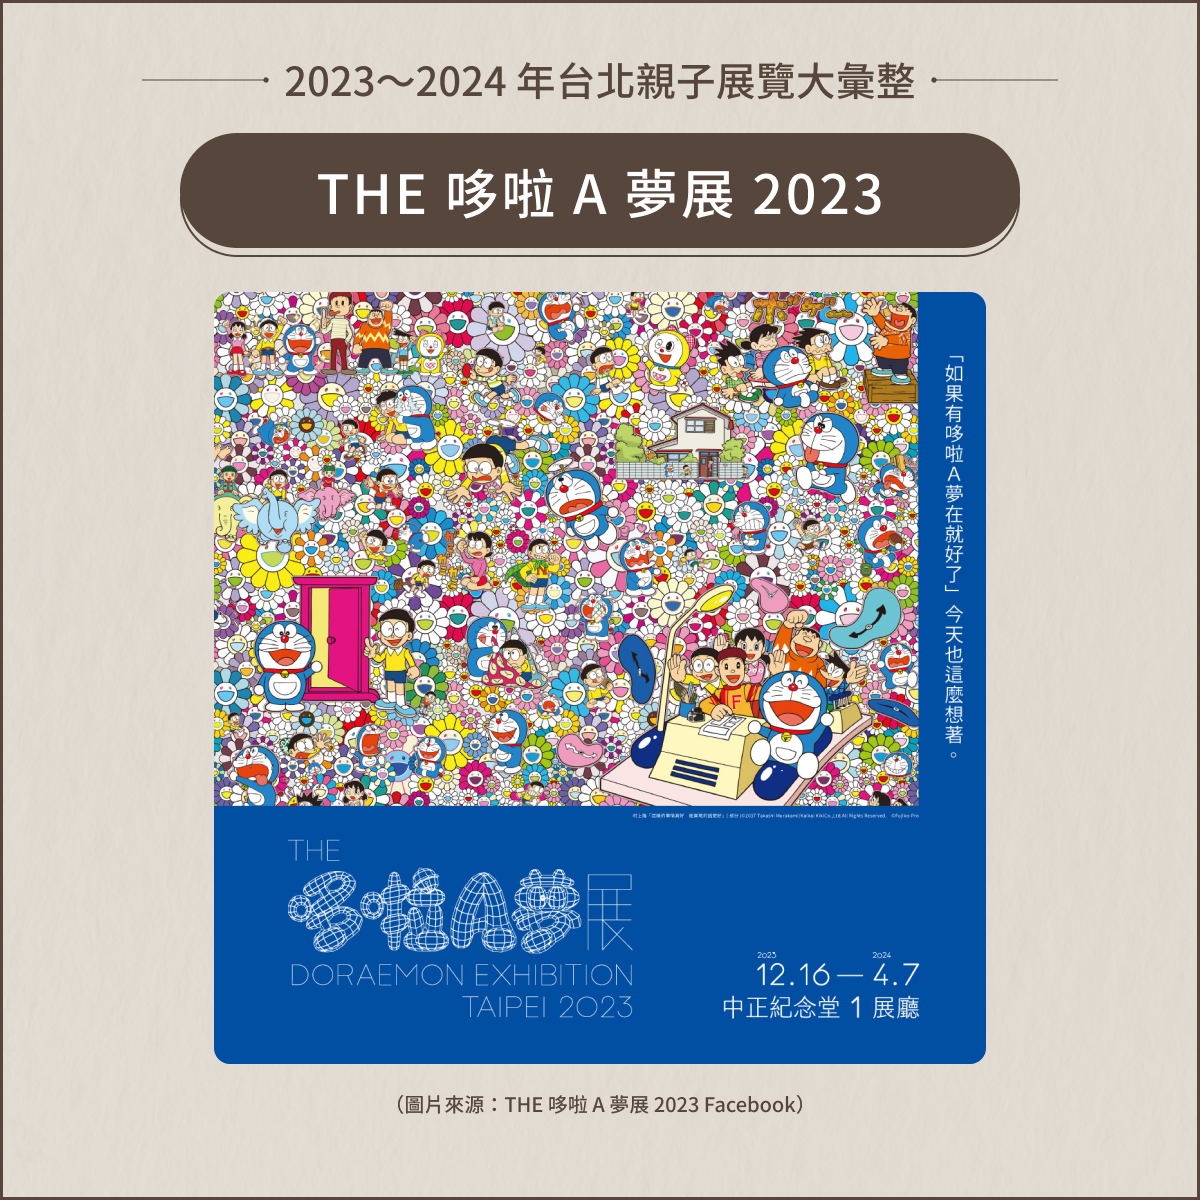 THE 哆啦 A 夢展 2023